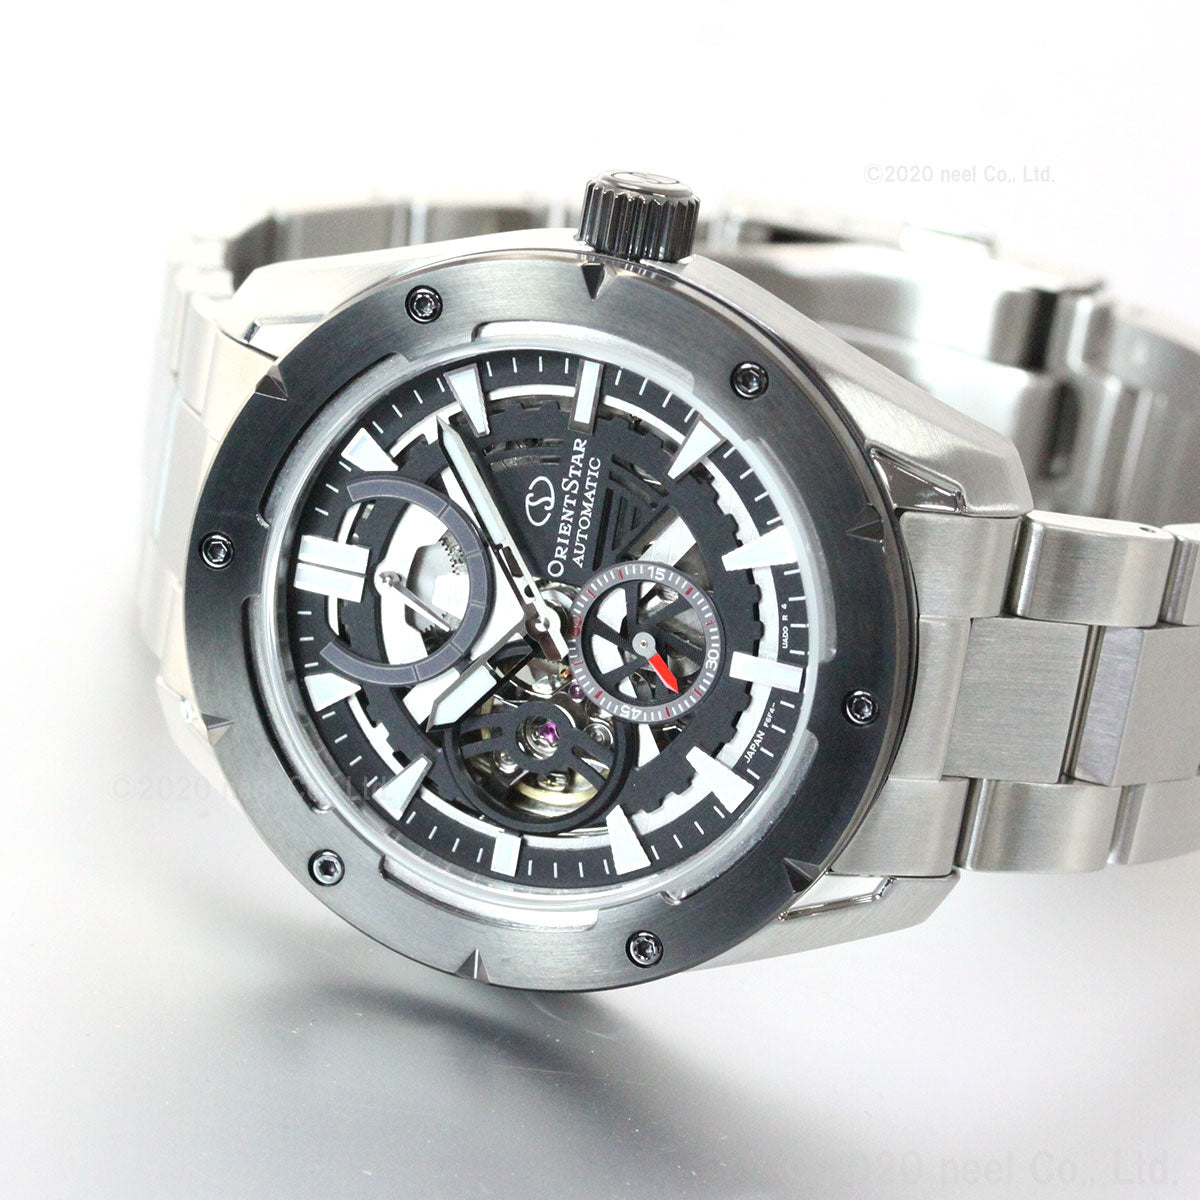 オリエントスター ORIENT STAR アバンギャルドスケルトン 腕時計 メンズ 自動巻き 機械式 スポーツ RK-AV0A01B